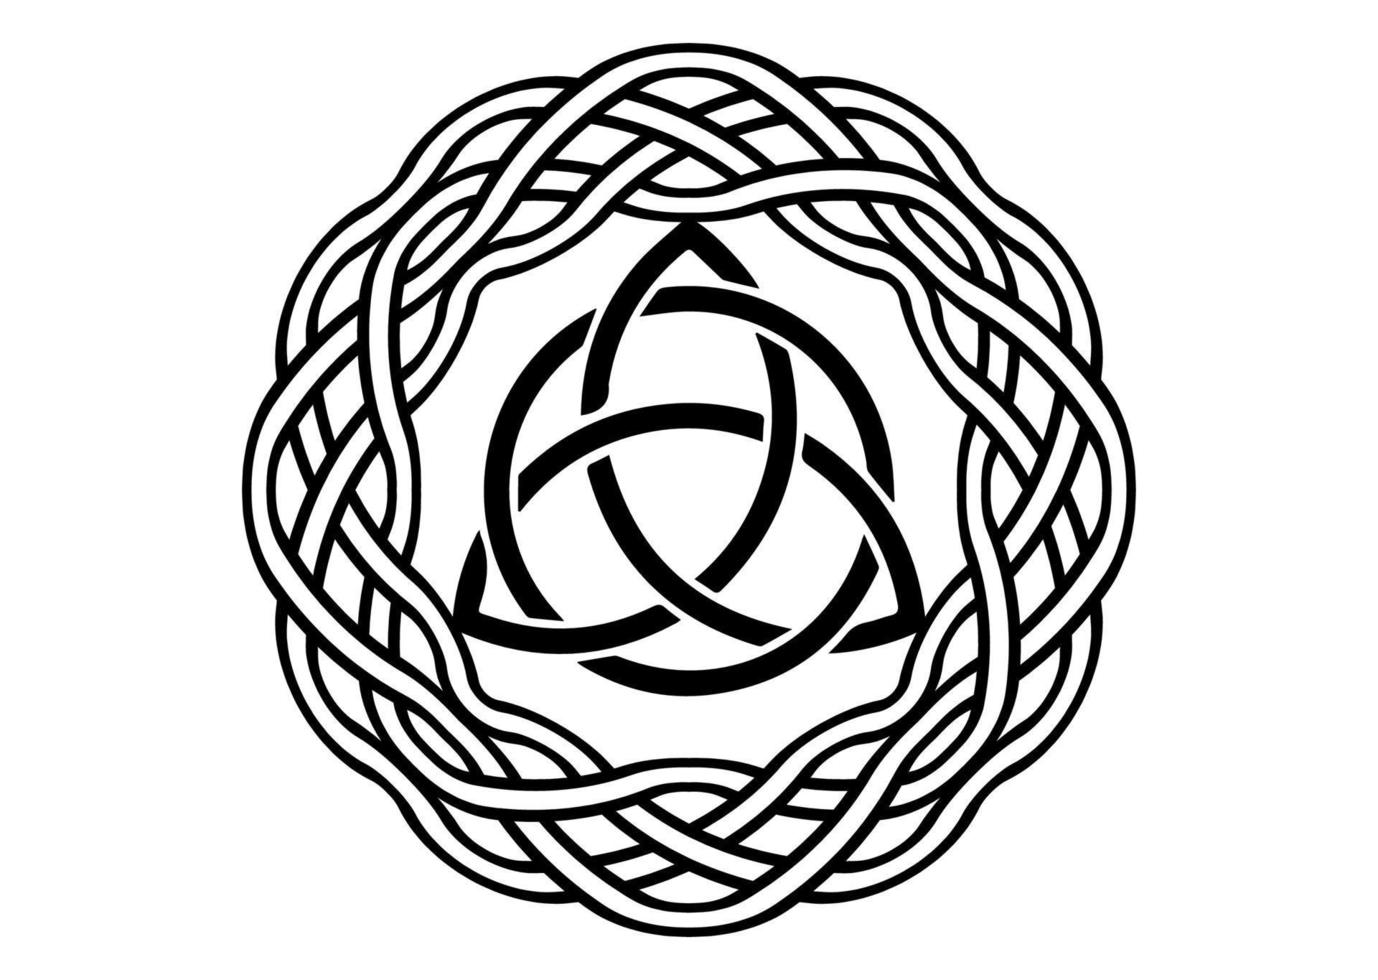 triquetra, trinity Knut, wiccan symbol för skydd. vektor svart celtic trinity Knut uppsättning isolerat på vit bakgrund. logotyp cirkel wiccan spådom symbol, gammal tatuering ockult symboler